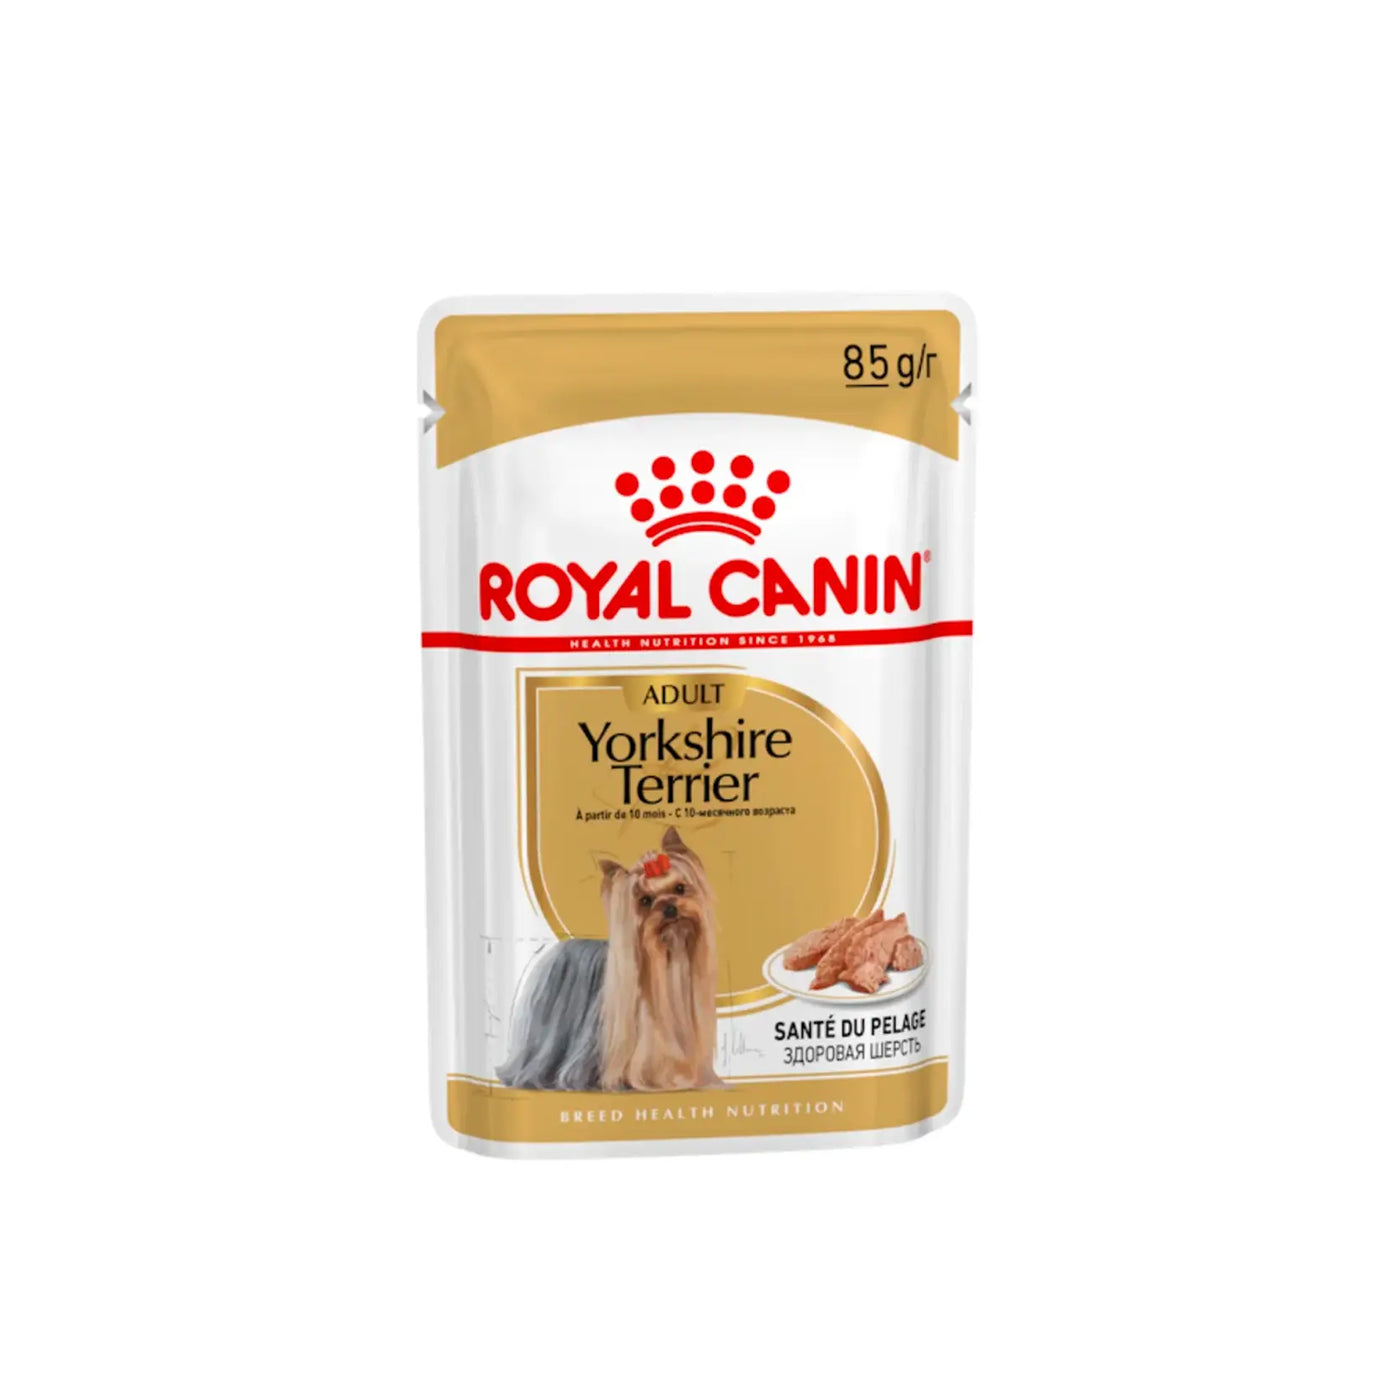 Royal Canin - Adult Yorkshire Terrier Loaf Wet Food 85g